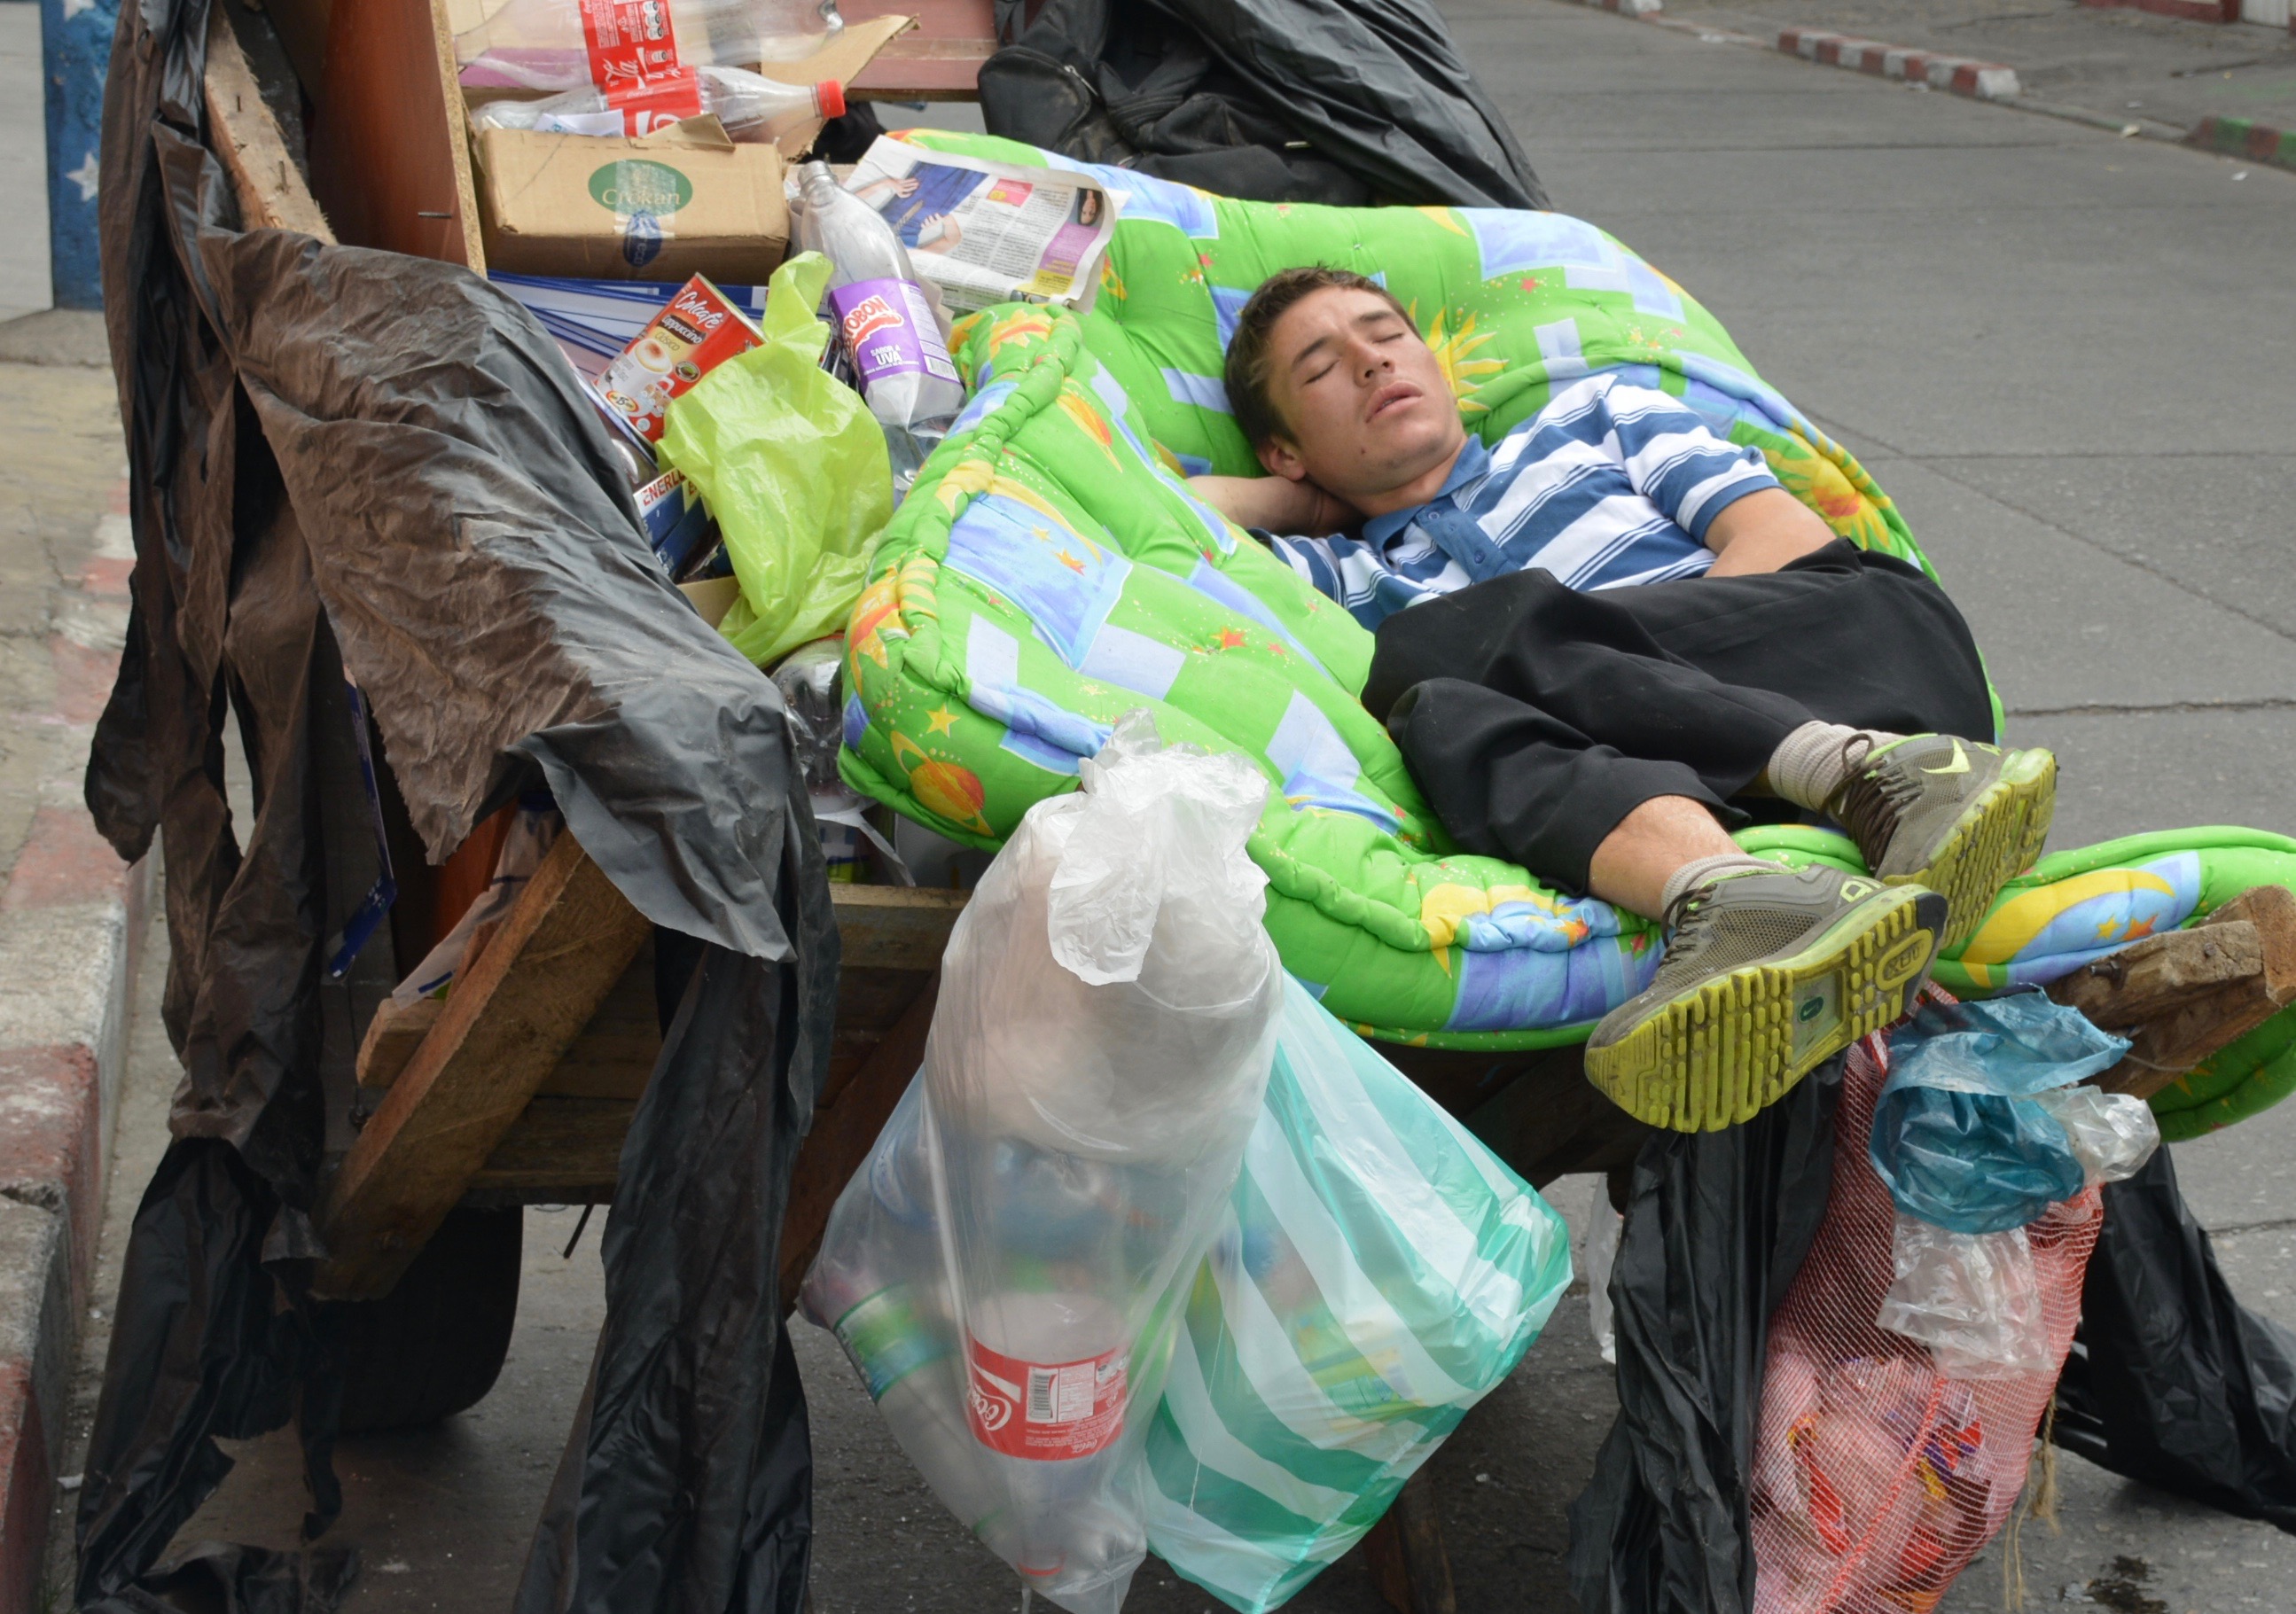 El Bronx de Bogotá, ¿recuperar las calles o desplazar el problema?